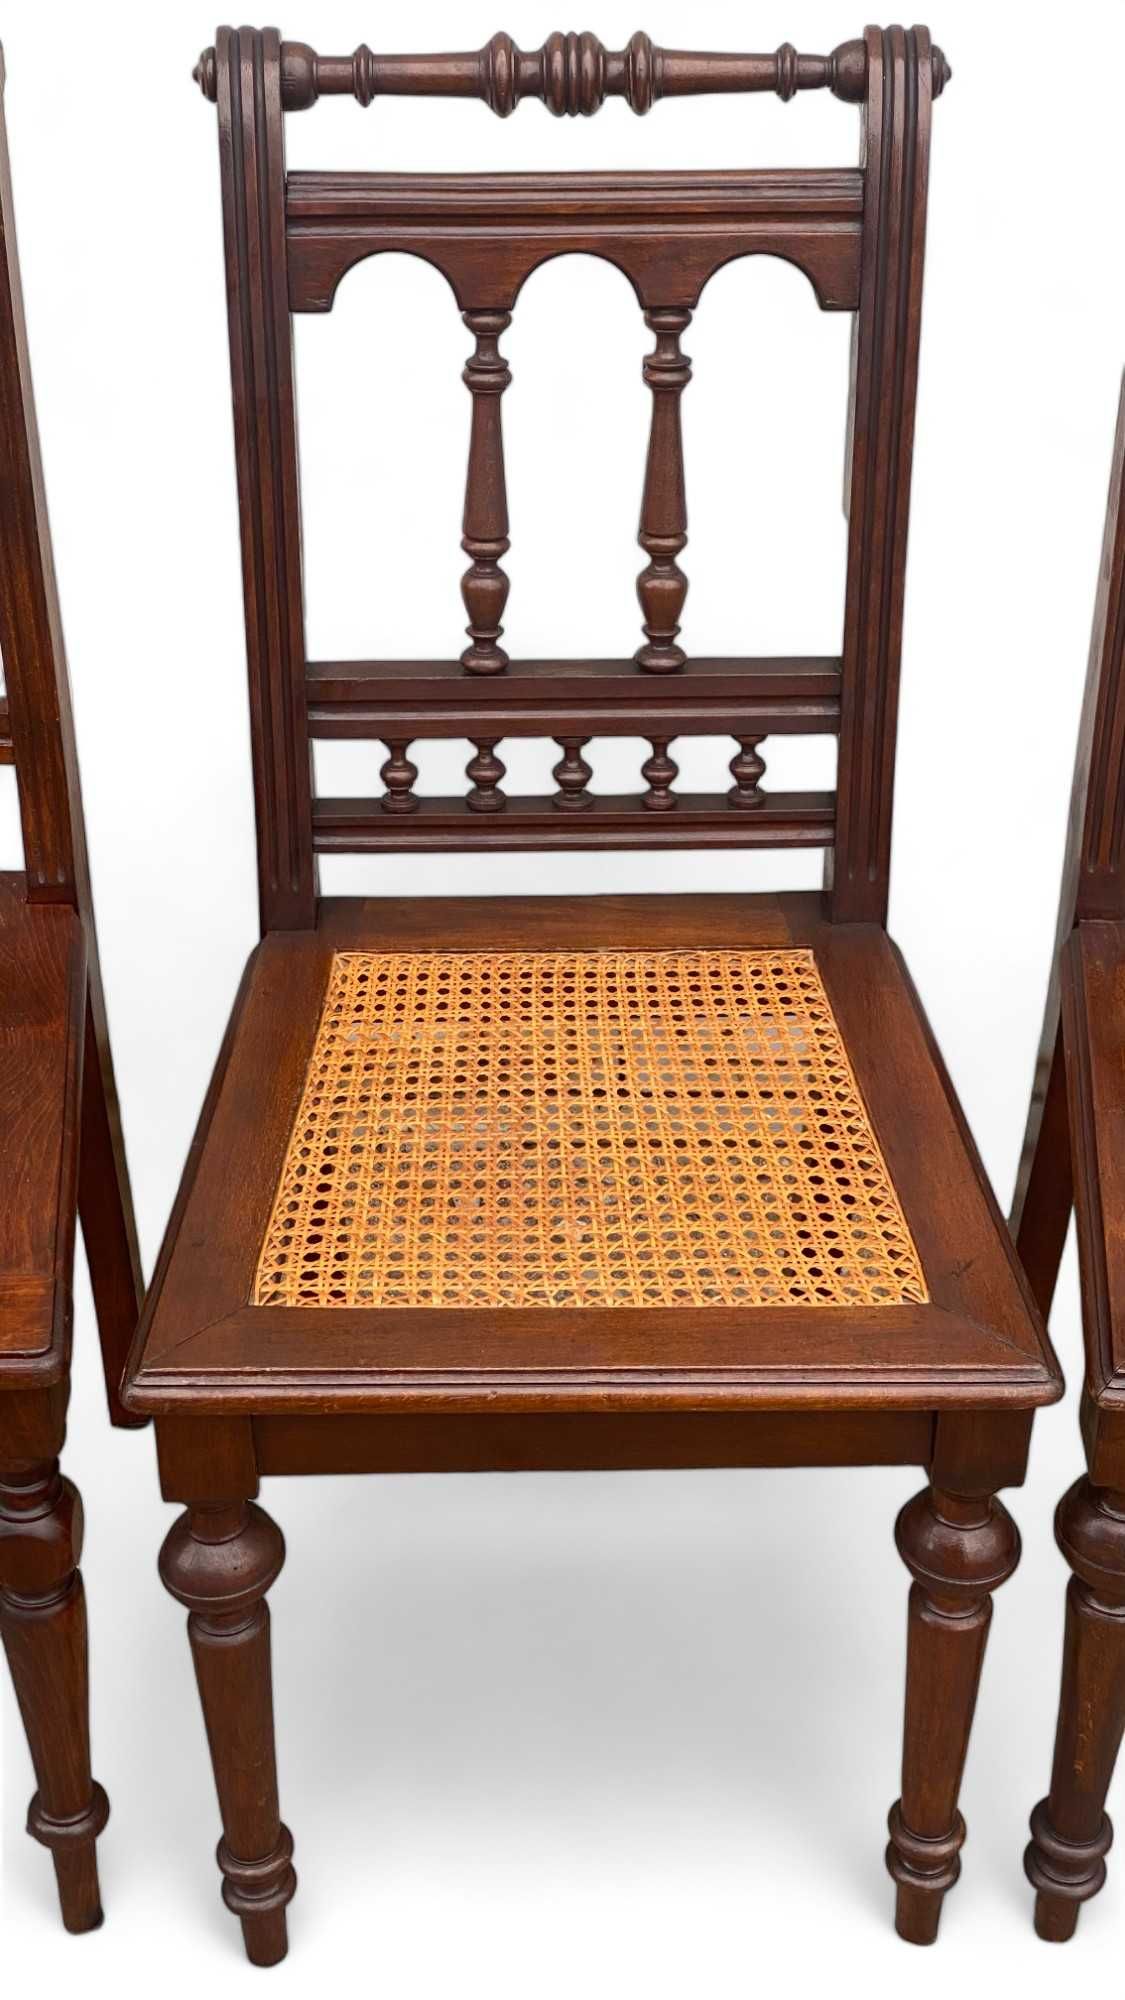 6 krzeseł eklektycznych z rafią KOMPLET, orzech, krzesła stylowe